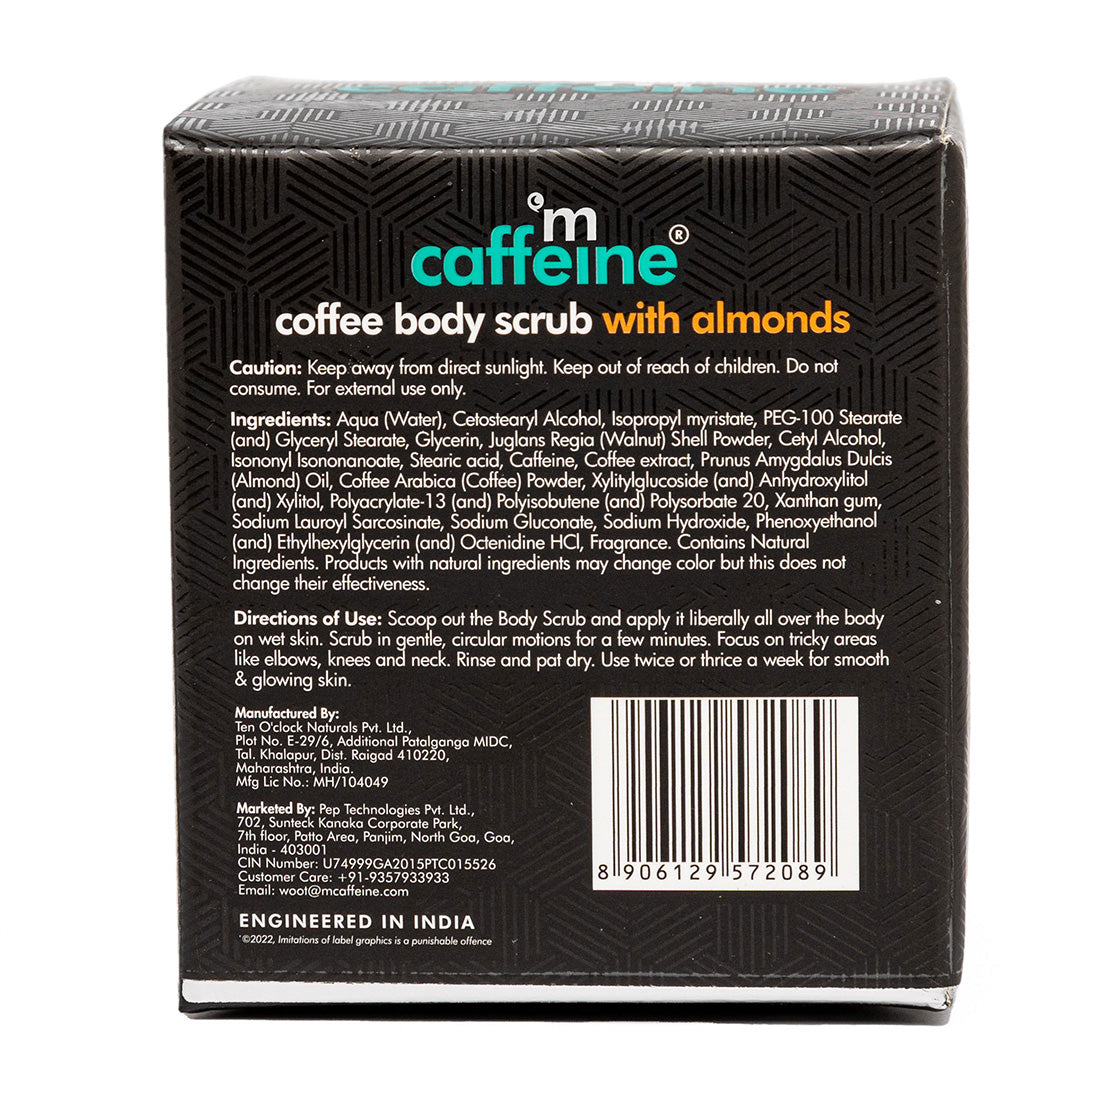 mCaffeine Creamy Coffee Body Scrub with Almonds - Moisturizes, Exfoliates, Removes Tan & Dry Skin